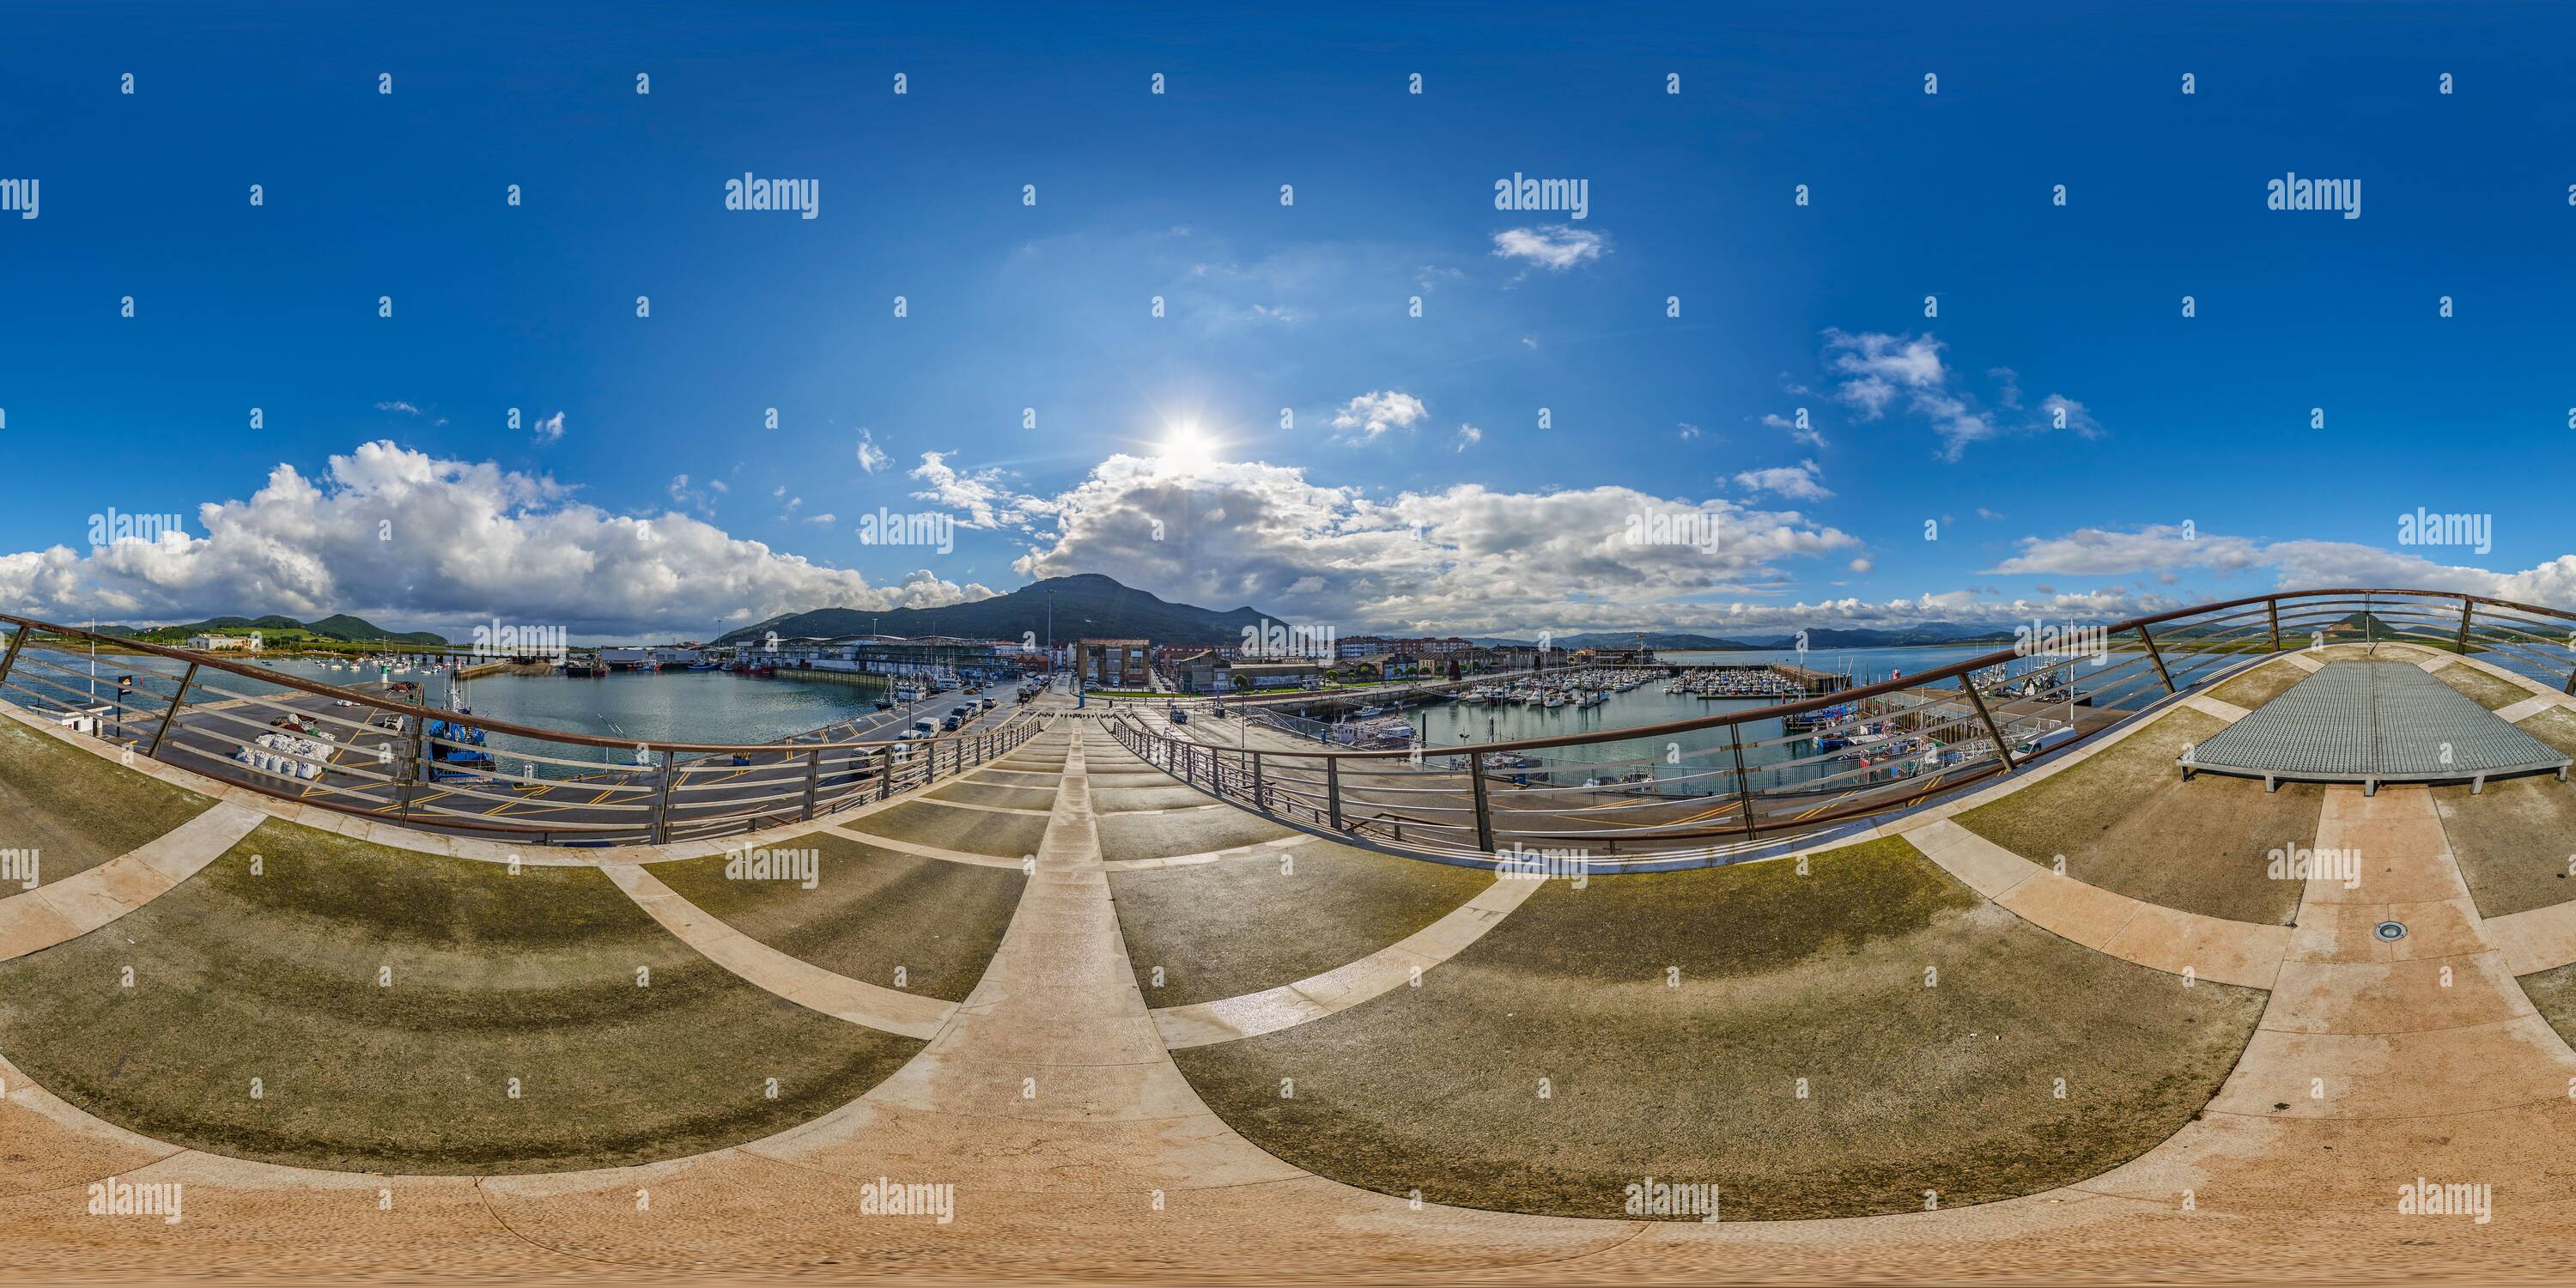 Vue panoramique à 360° de 360 degrés panoramique: Centre d'interprétation du Parc naturel des marais de Santoña, Victoria et Joyel, Cantabrie, Espagne, Europe